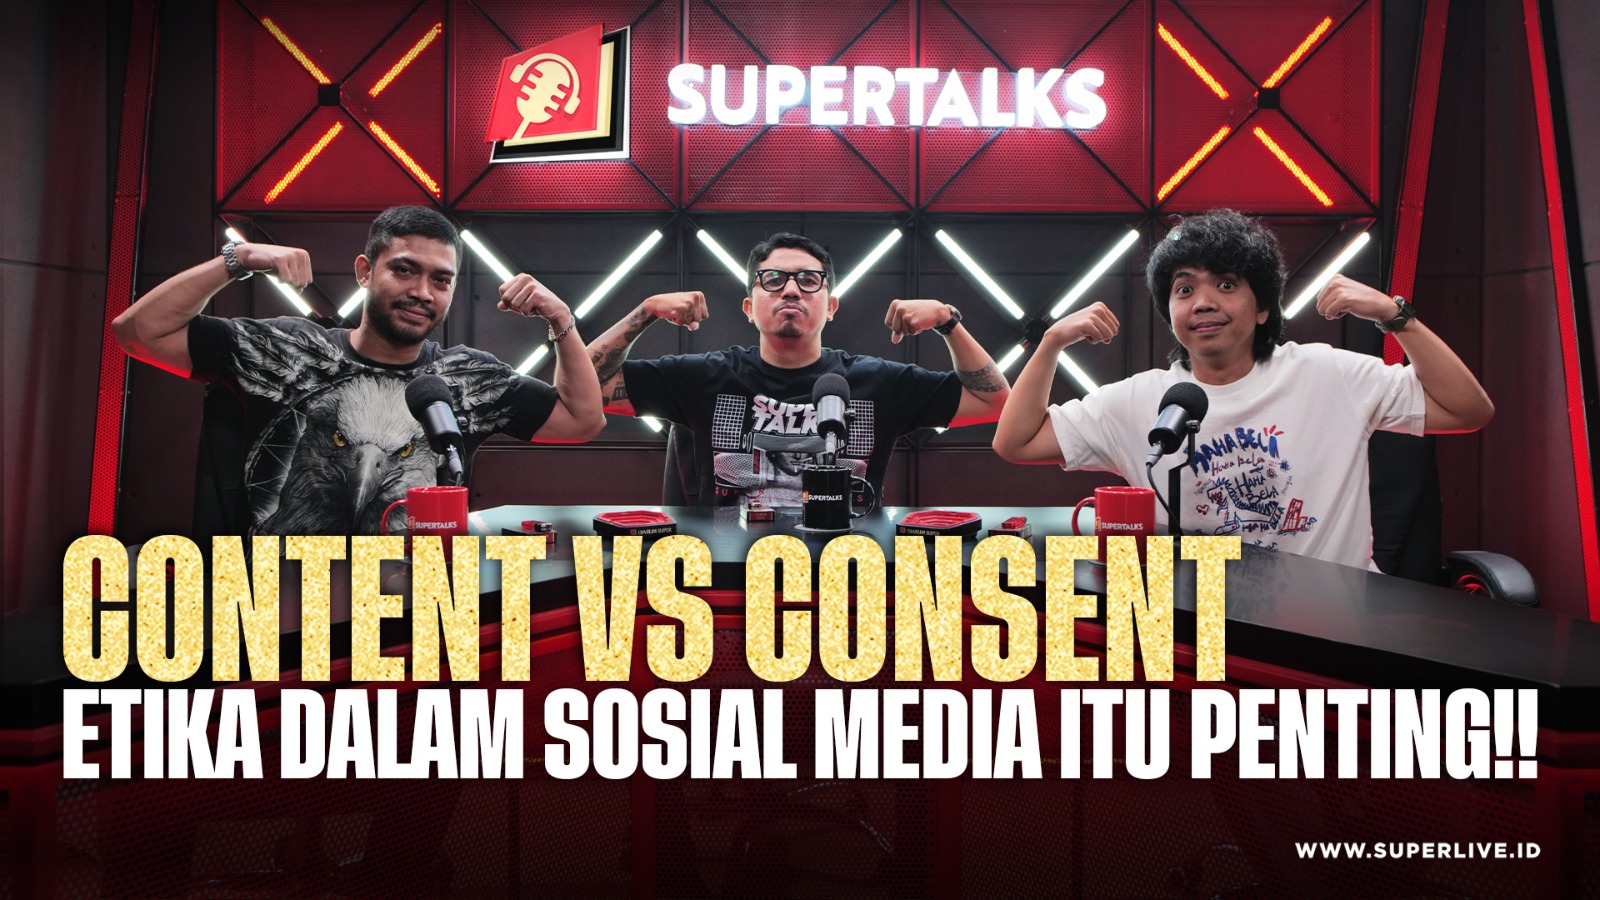 SUPERTALKS  - Content Vs Consent "Etika Dalam Social Media Itu Penting!"